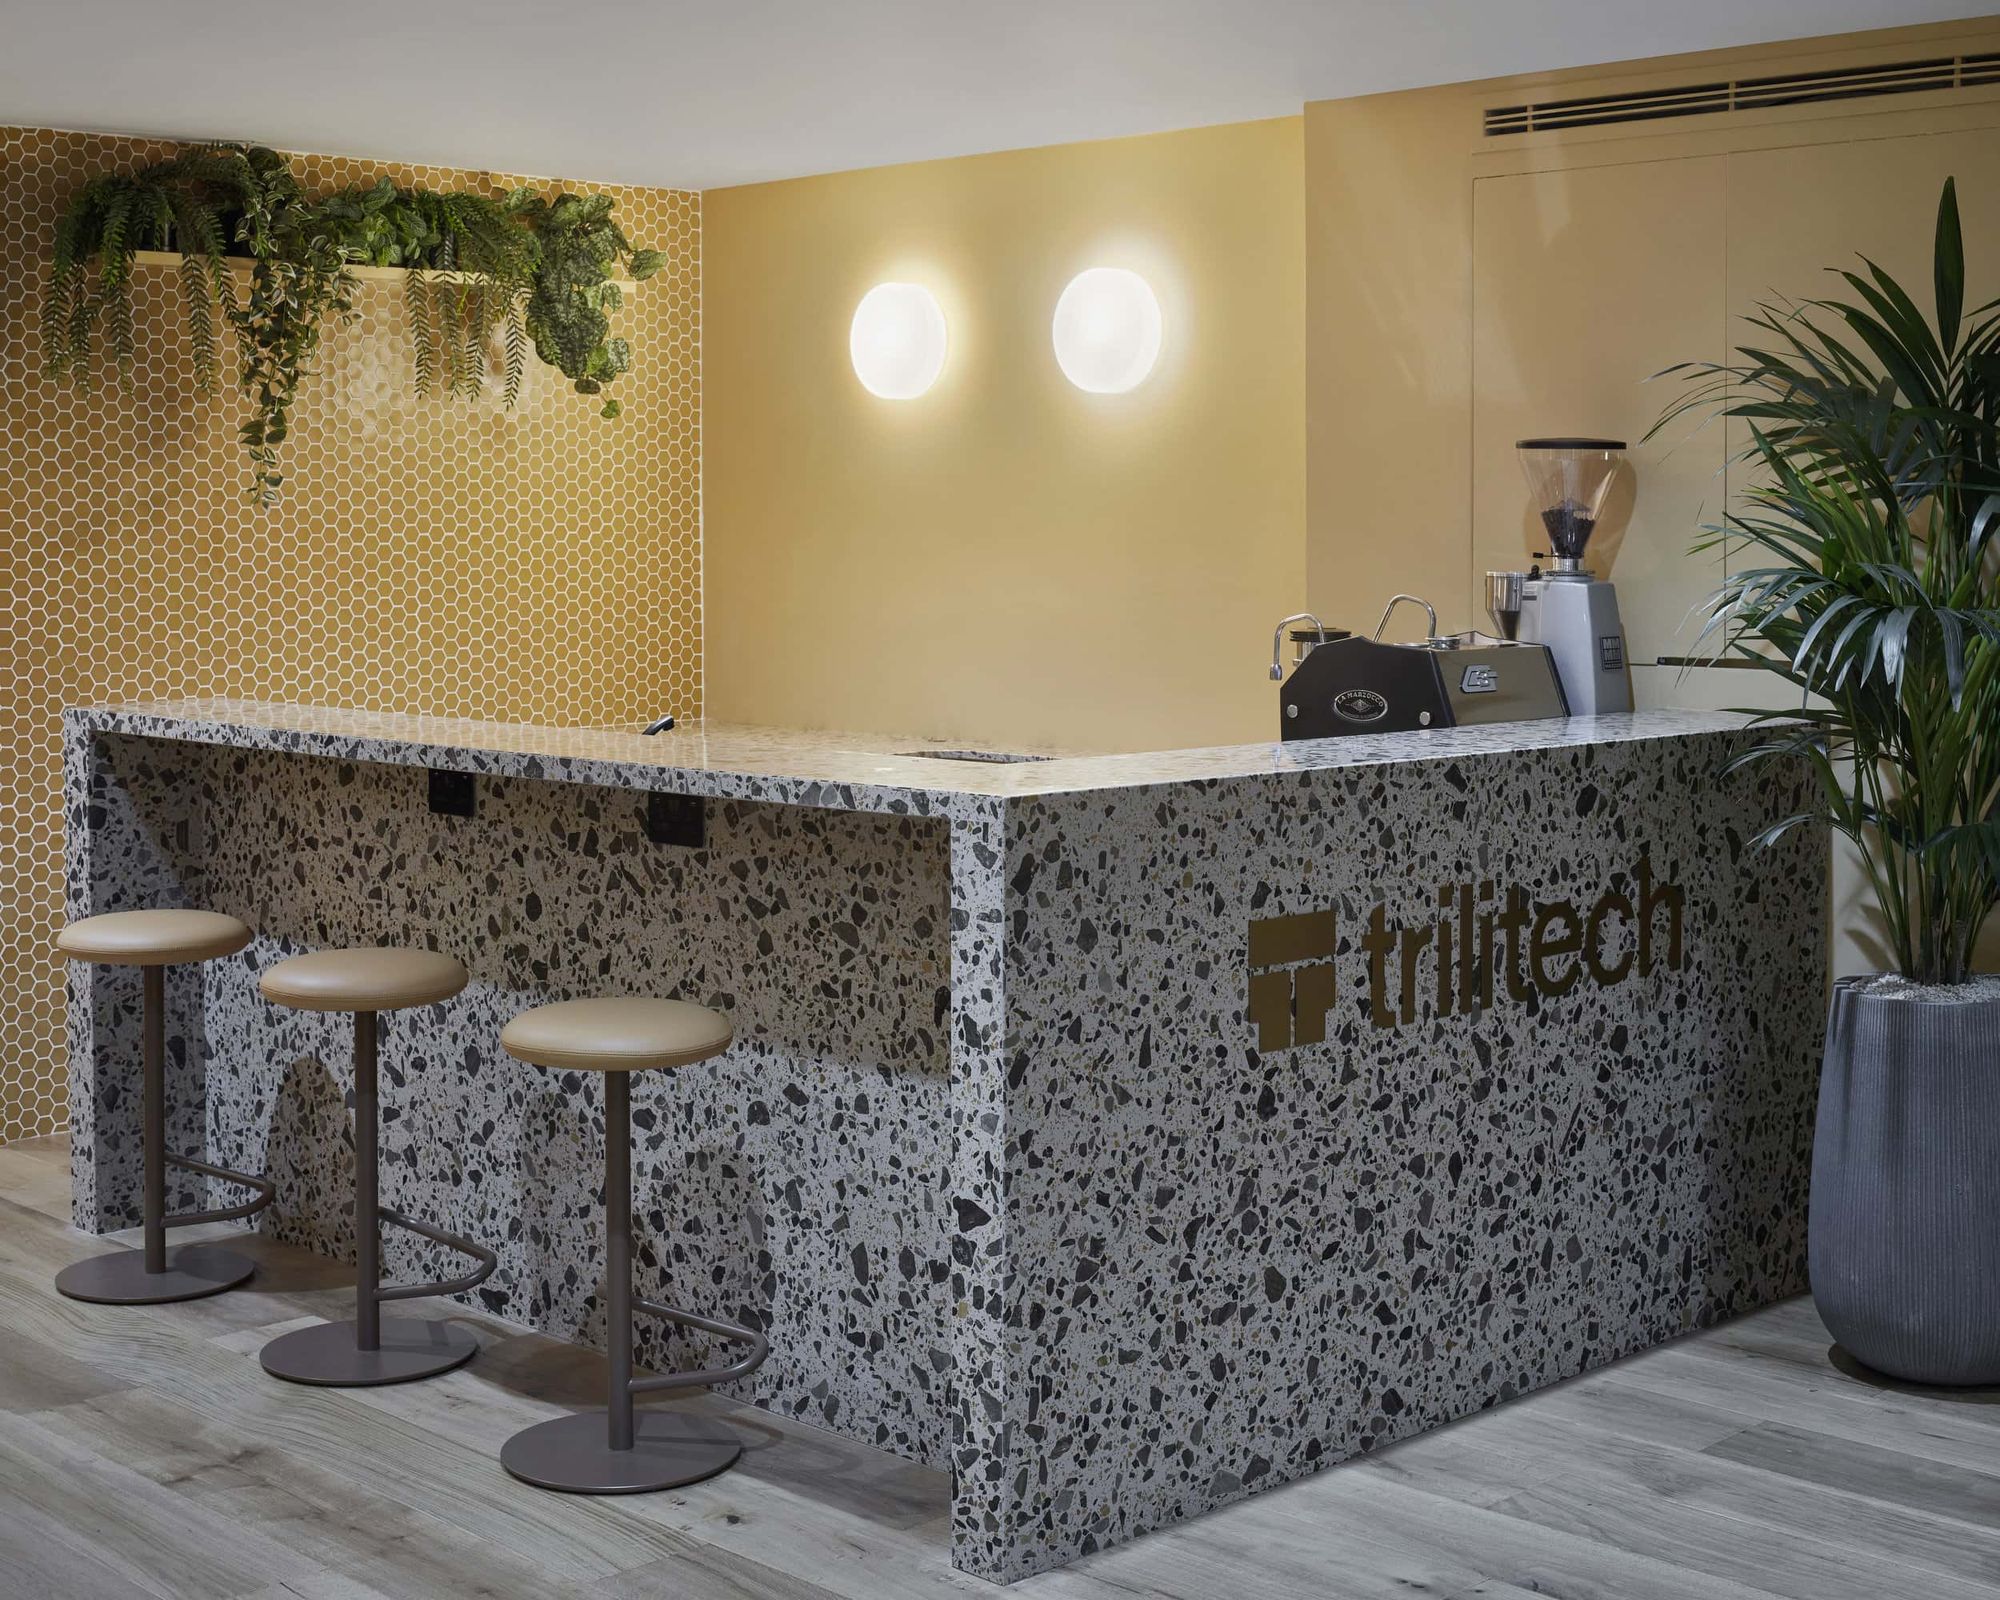 图片[2]|Trilitech伦敦办事处|ART-Arrakis | 建筑室内设计的创新与灵感